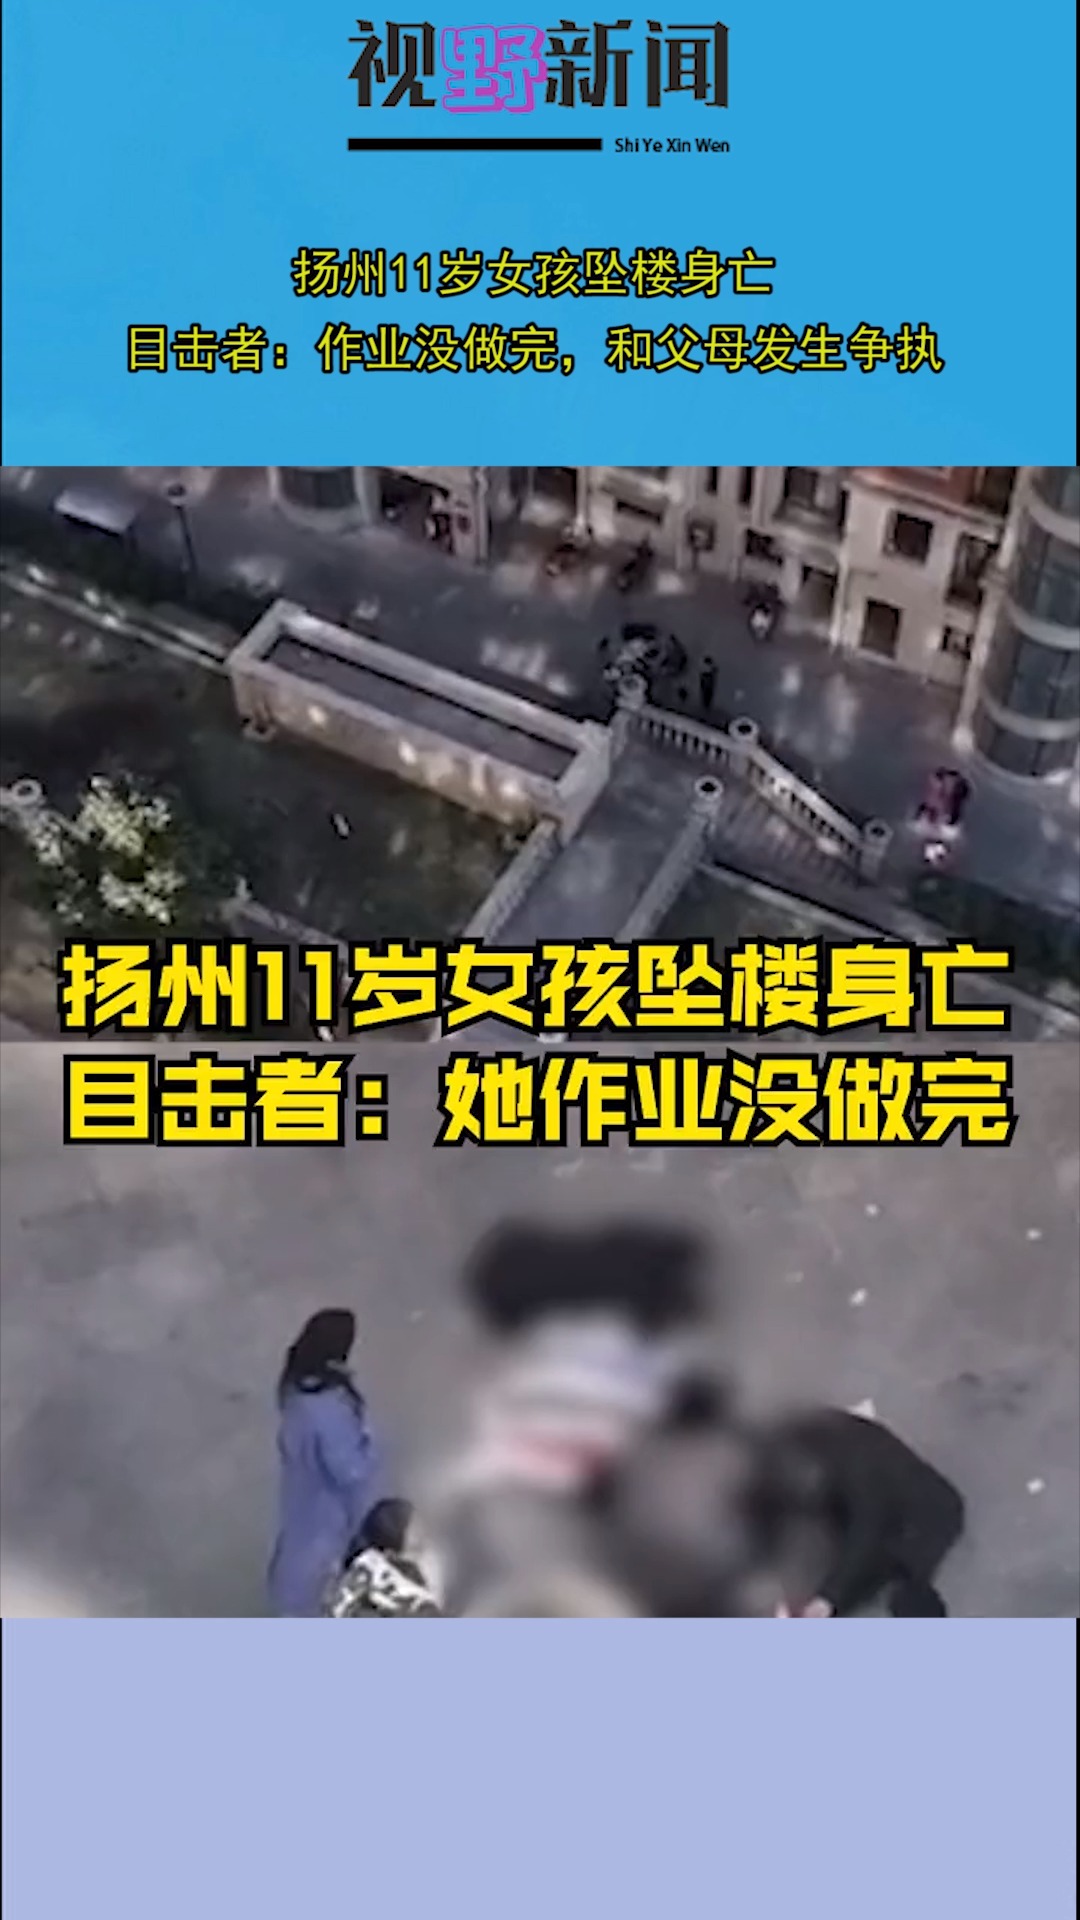 扬州11岁女孩坠楼身亡,目击者:作业没做完,和父母发生争执